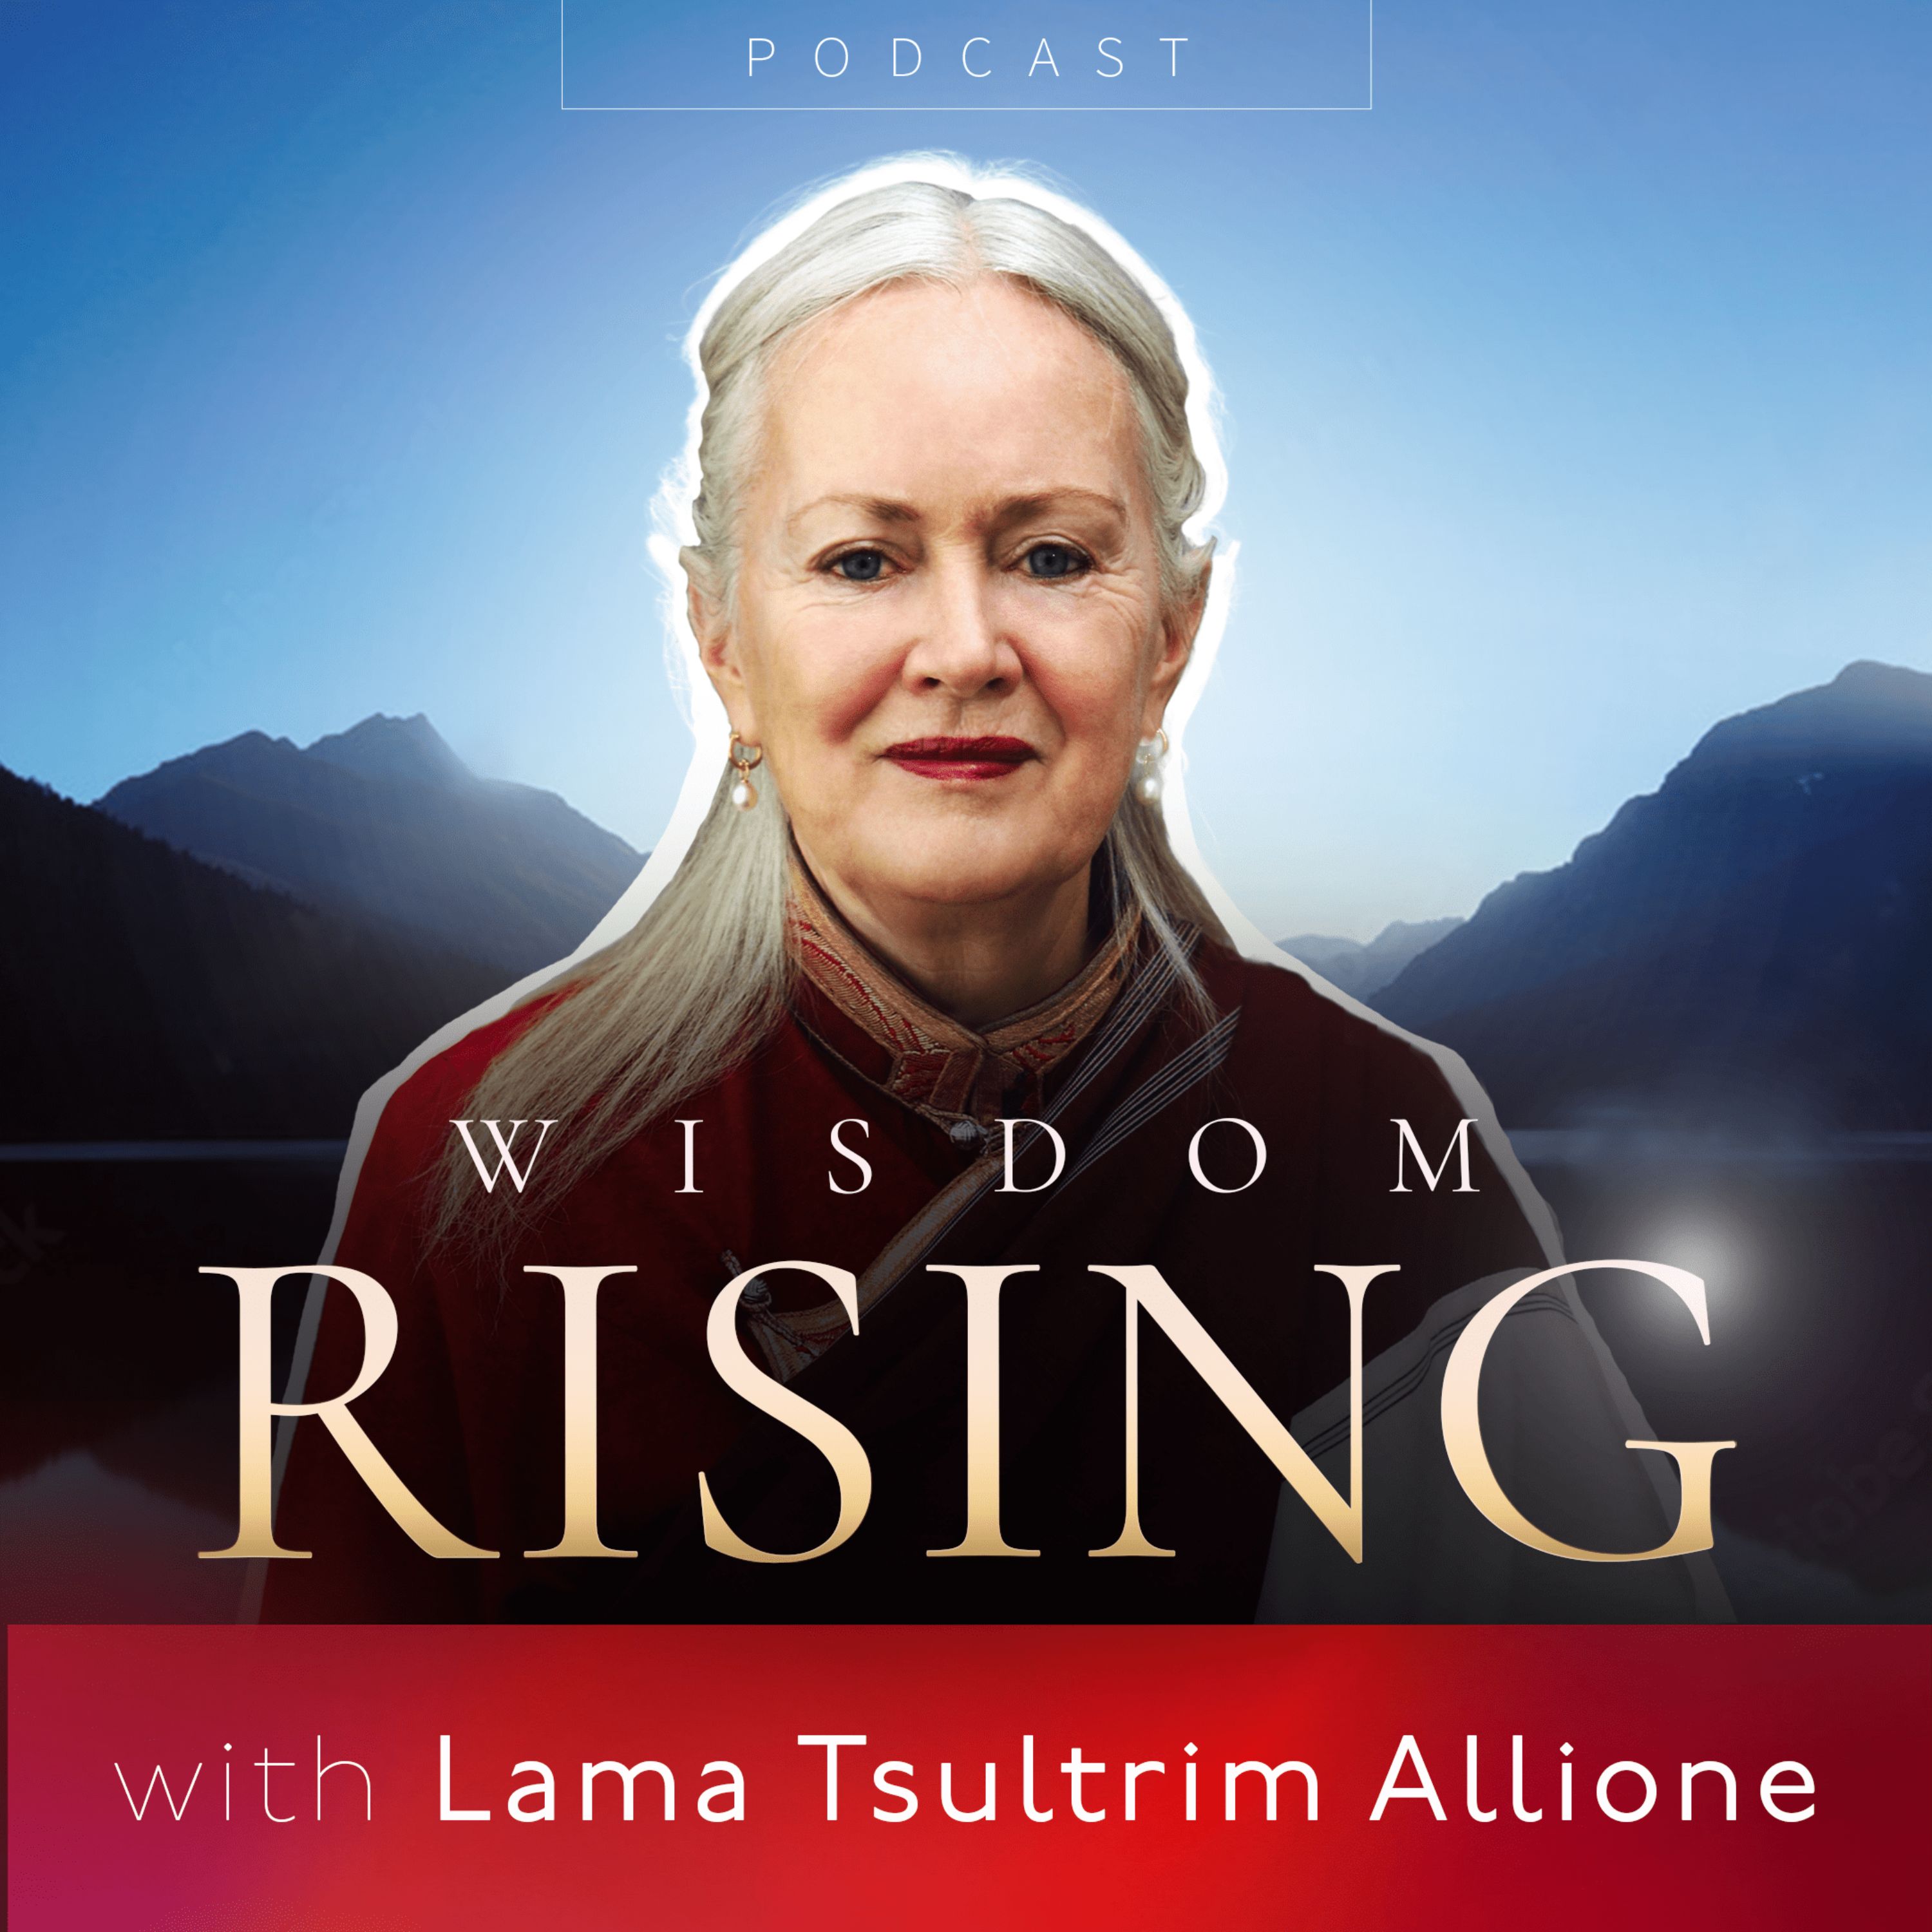 Wisdom Rising with Lama Tsultrim Allione